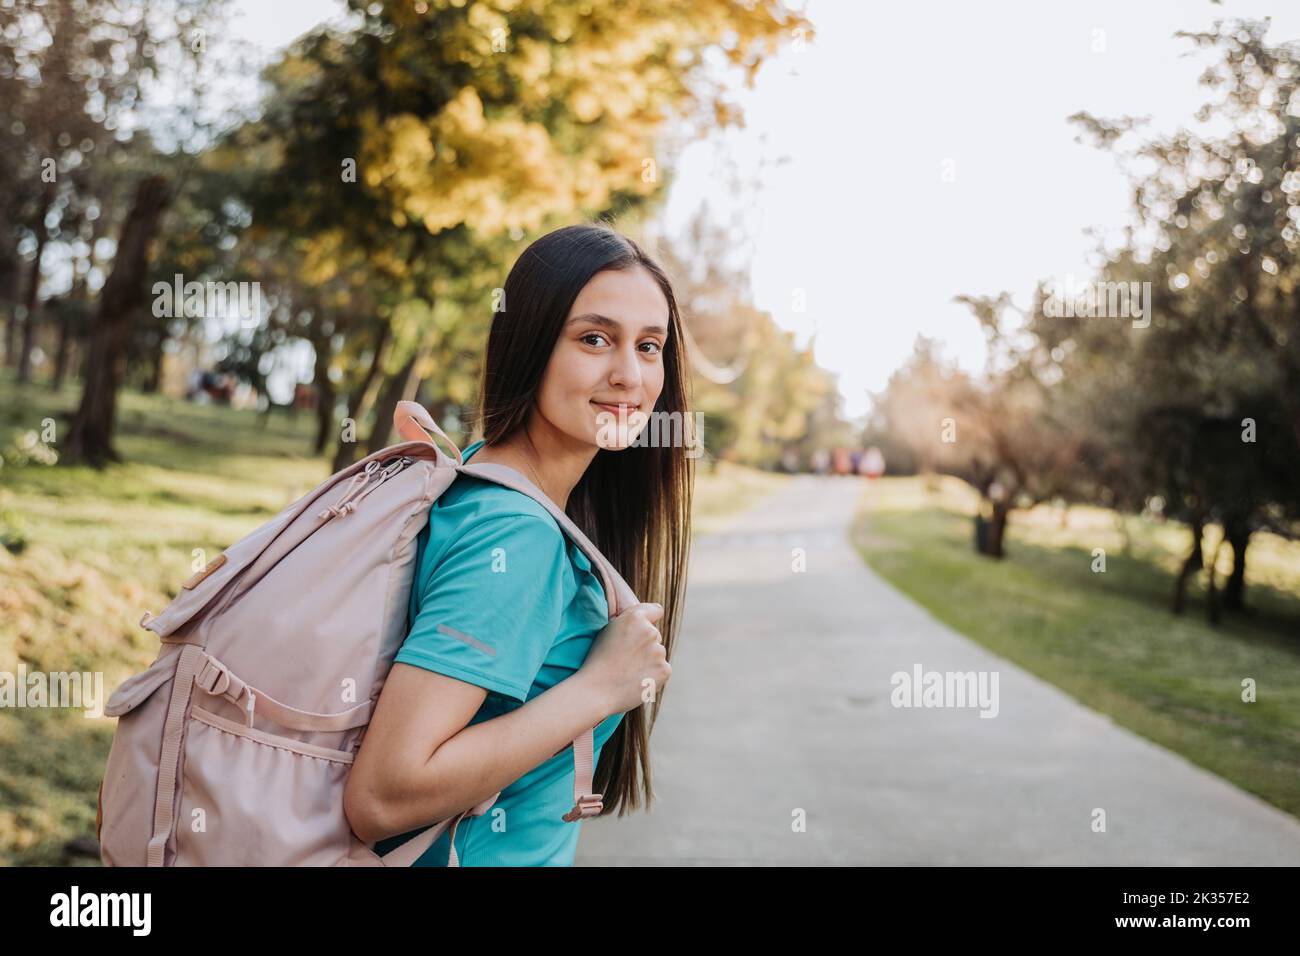 Rückansicht eines Studenten-Mädchens, das einen Rucksack trägt und mit einem ruhigen Lächeln in einer Parkstraße auf die Kamera blickt. Zukünftiger Weg Stockfoto